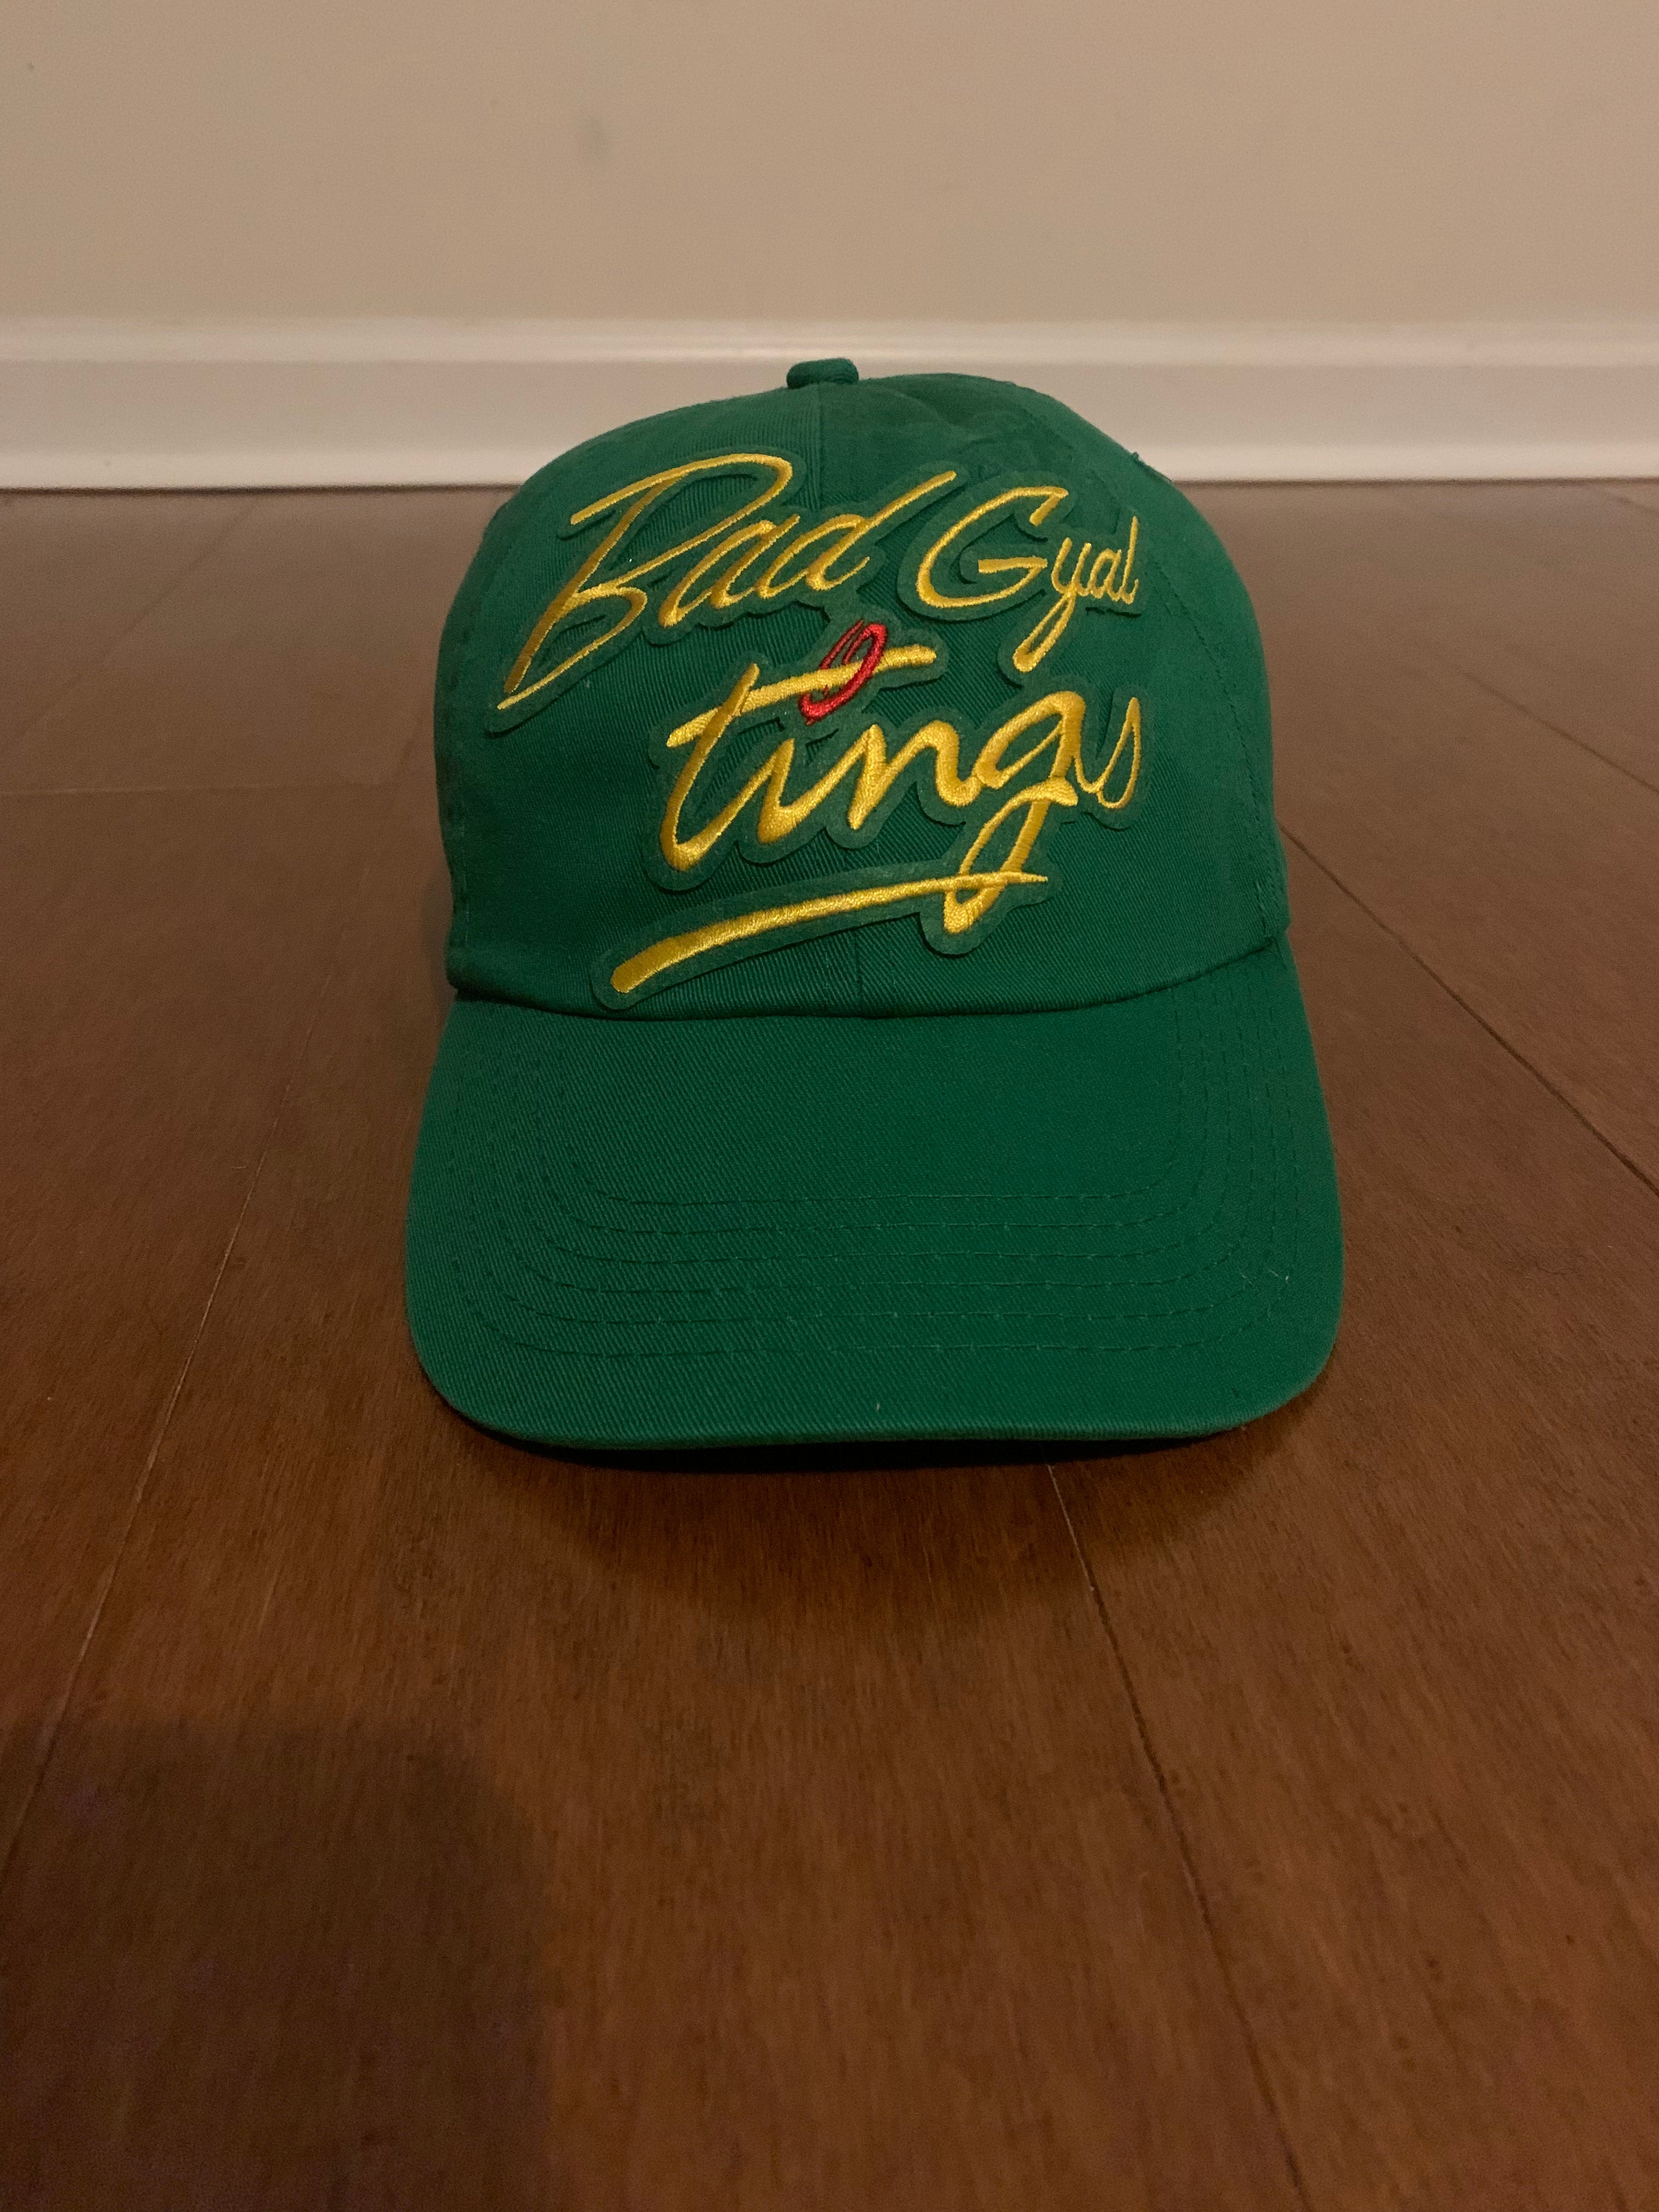 Bad Gyal Tings Citrus Mooma Hat (green)